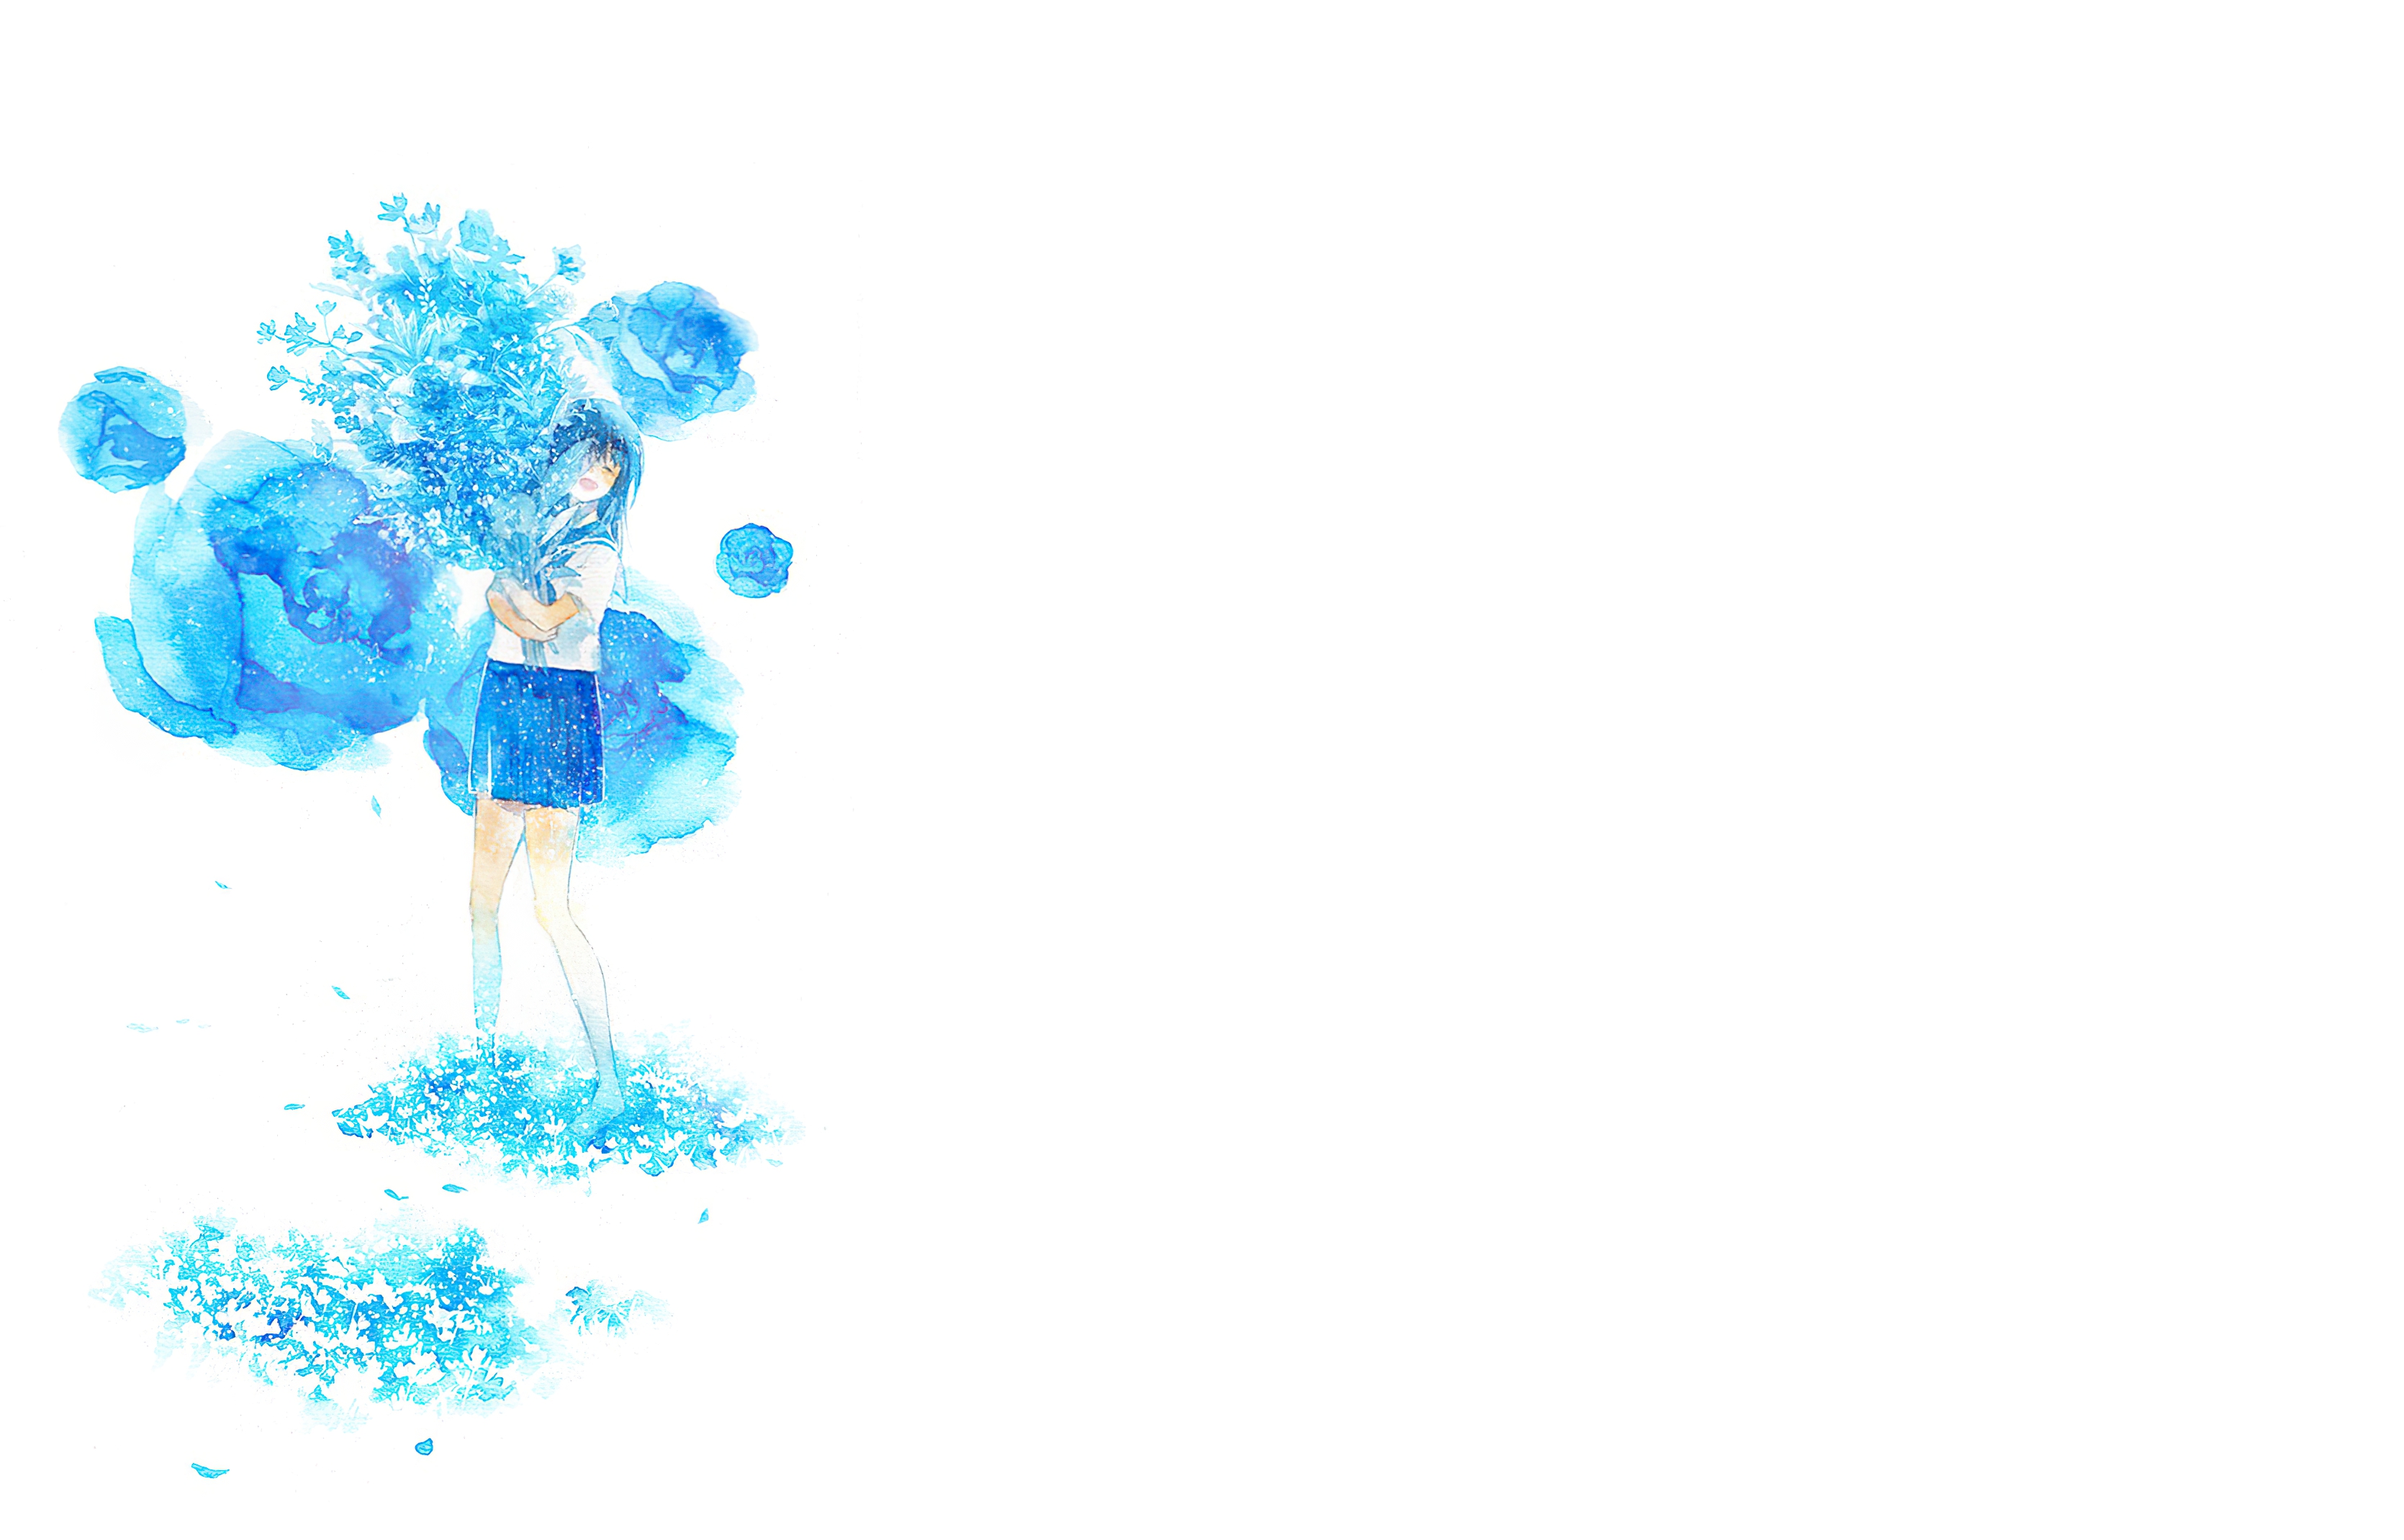 Download mobile wallpaper Anime, Flower, Smile, Original, Blue Hair, Long Hair for free.